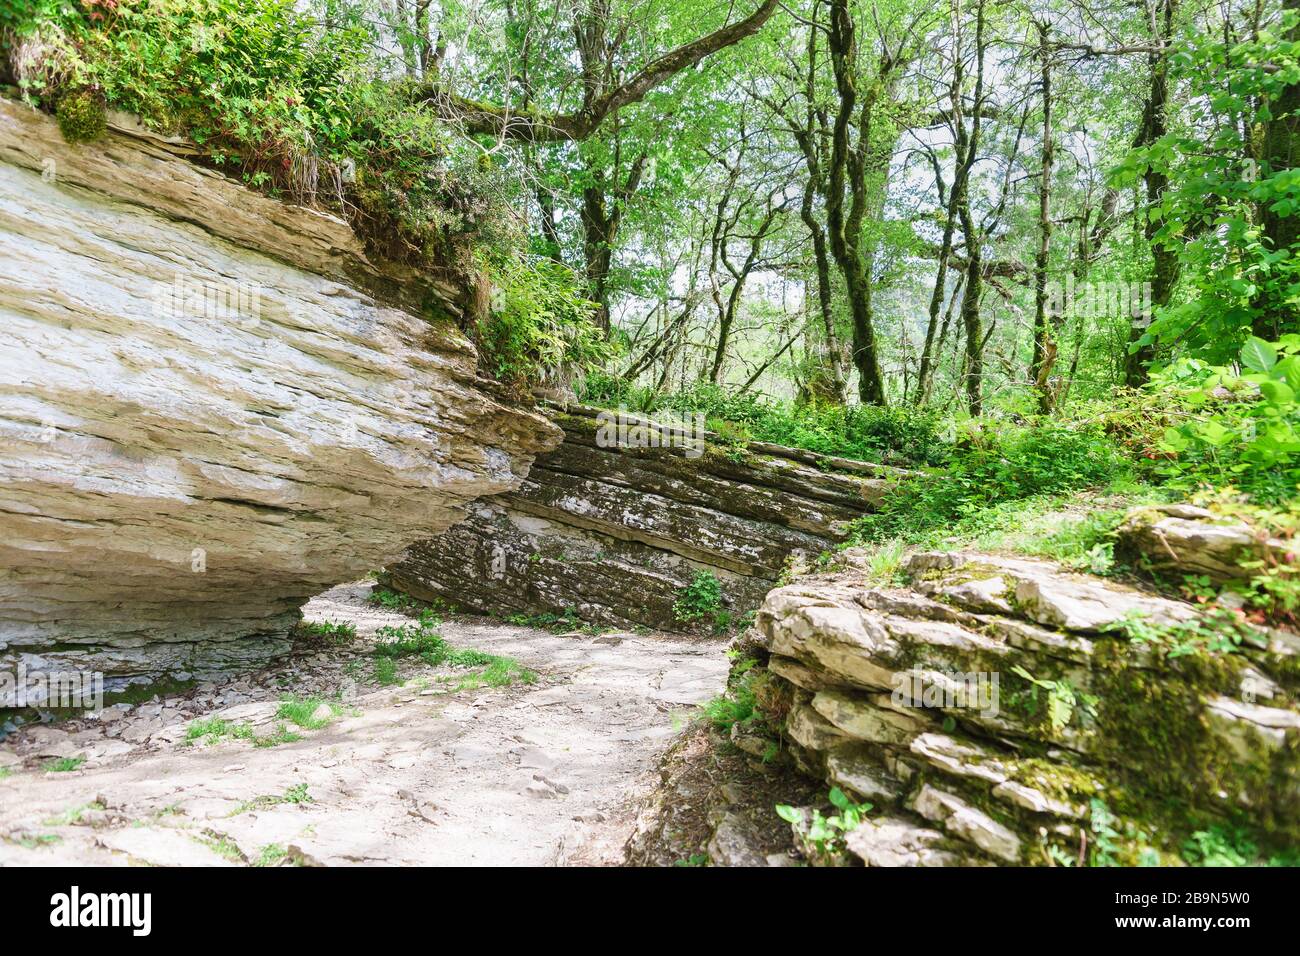 Les tours d'un labyrinthe de pierre causé par un défaut tectonique dans une yew-Box grove dans le district de Khostinsky de Sotchi. Russie, région de Krasnodar Banque D'Images